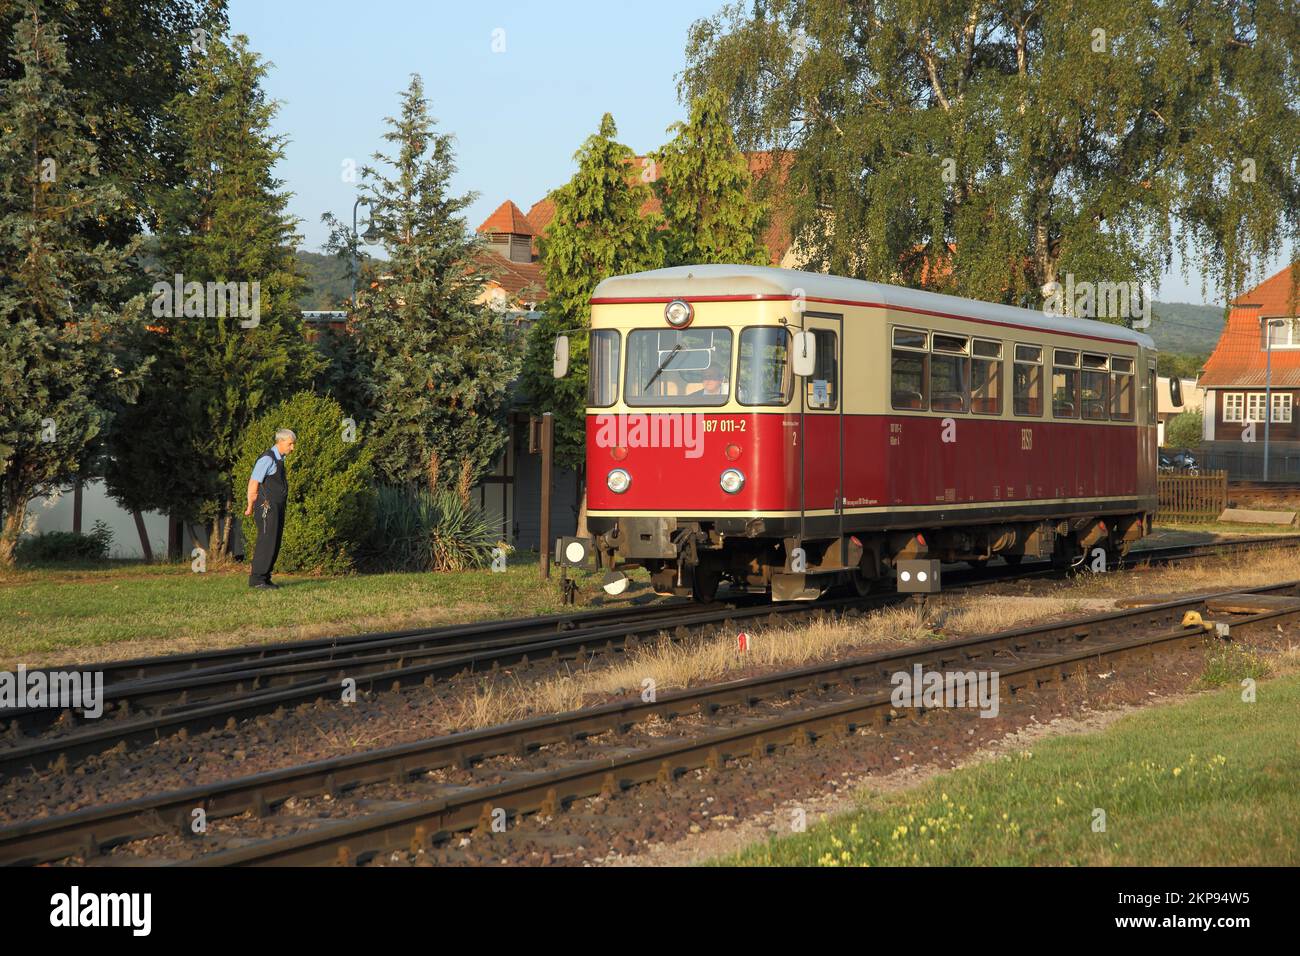 Harzer Schmalspurbahn Railbus, Railcar am Bahnhof Gernrode, Quedlinburg, Harz, Sachsen-Anhalt, Deutschland, Europa Stockfoto